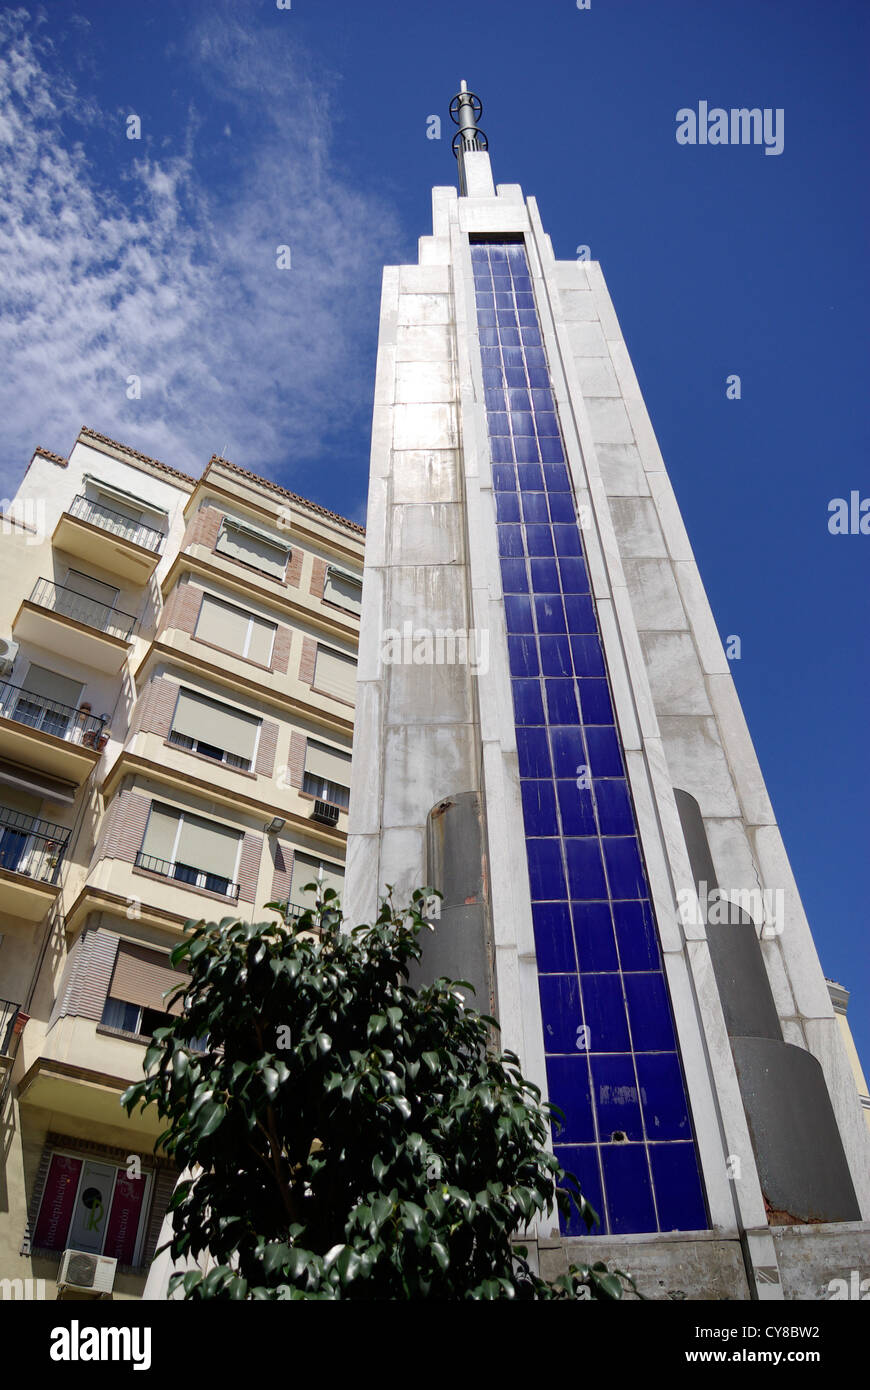 Obelisk / pillar in Plaza de Uncibay (Unicibay Square), Malaga, Andalusia, Spain Stock Photo